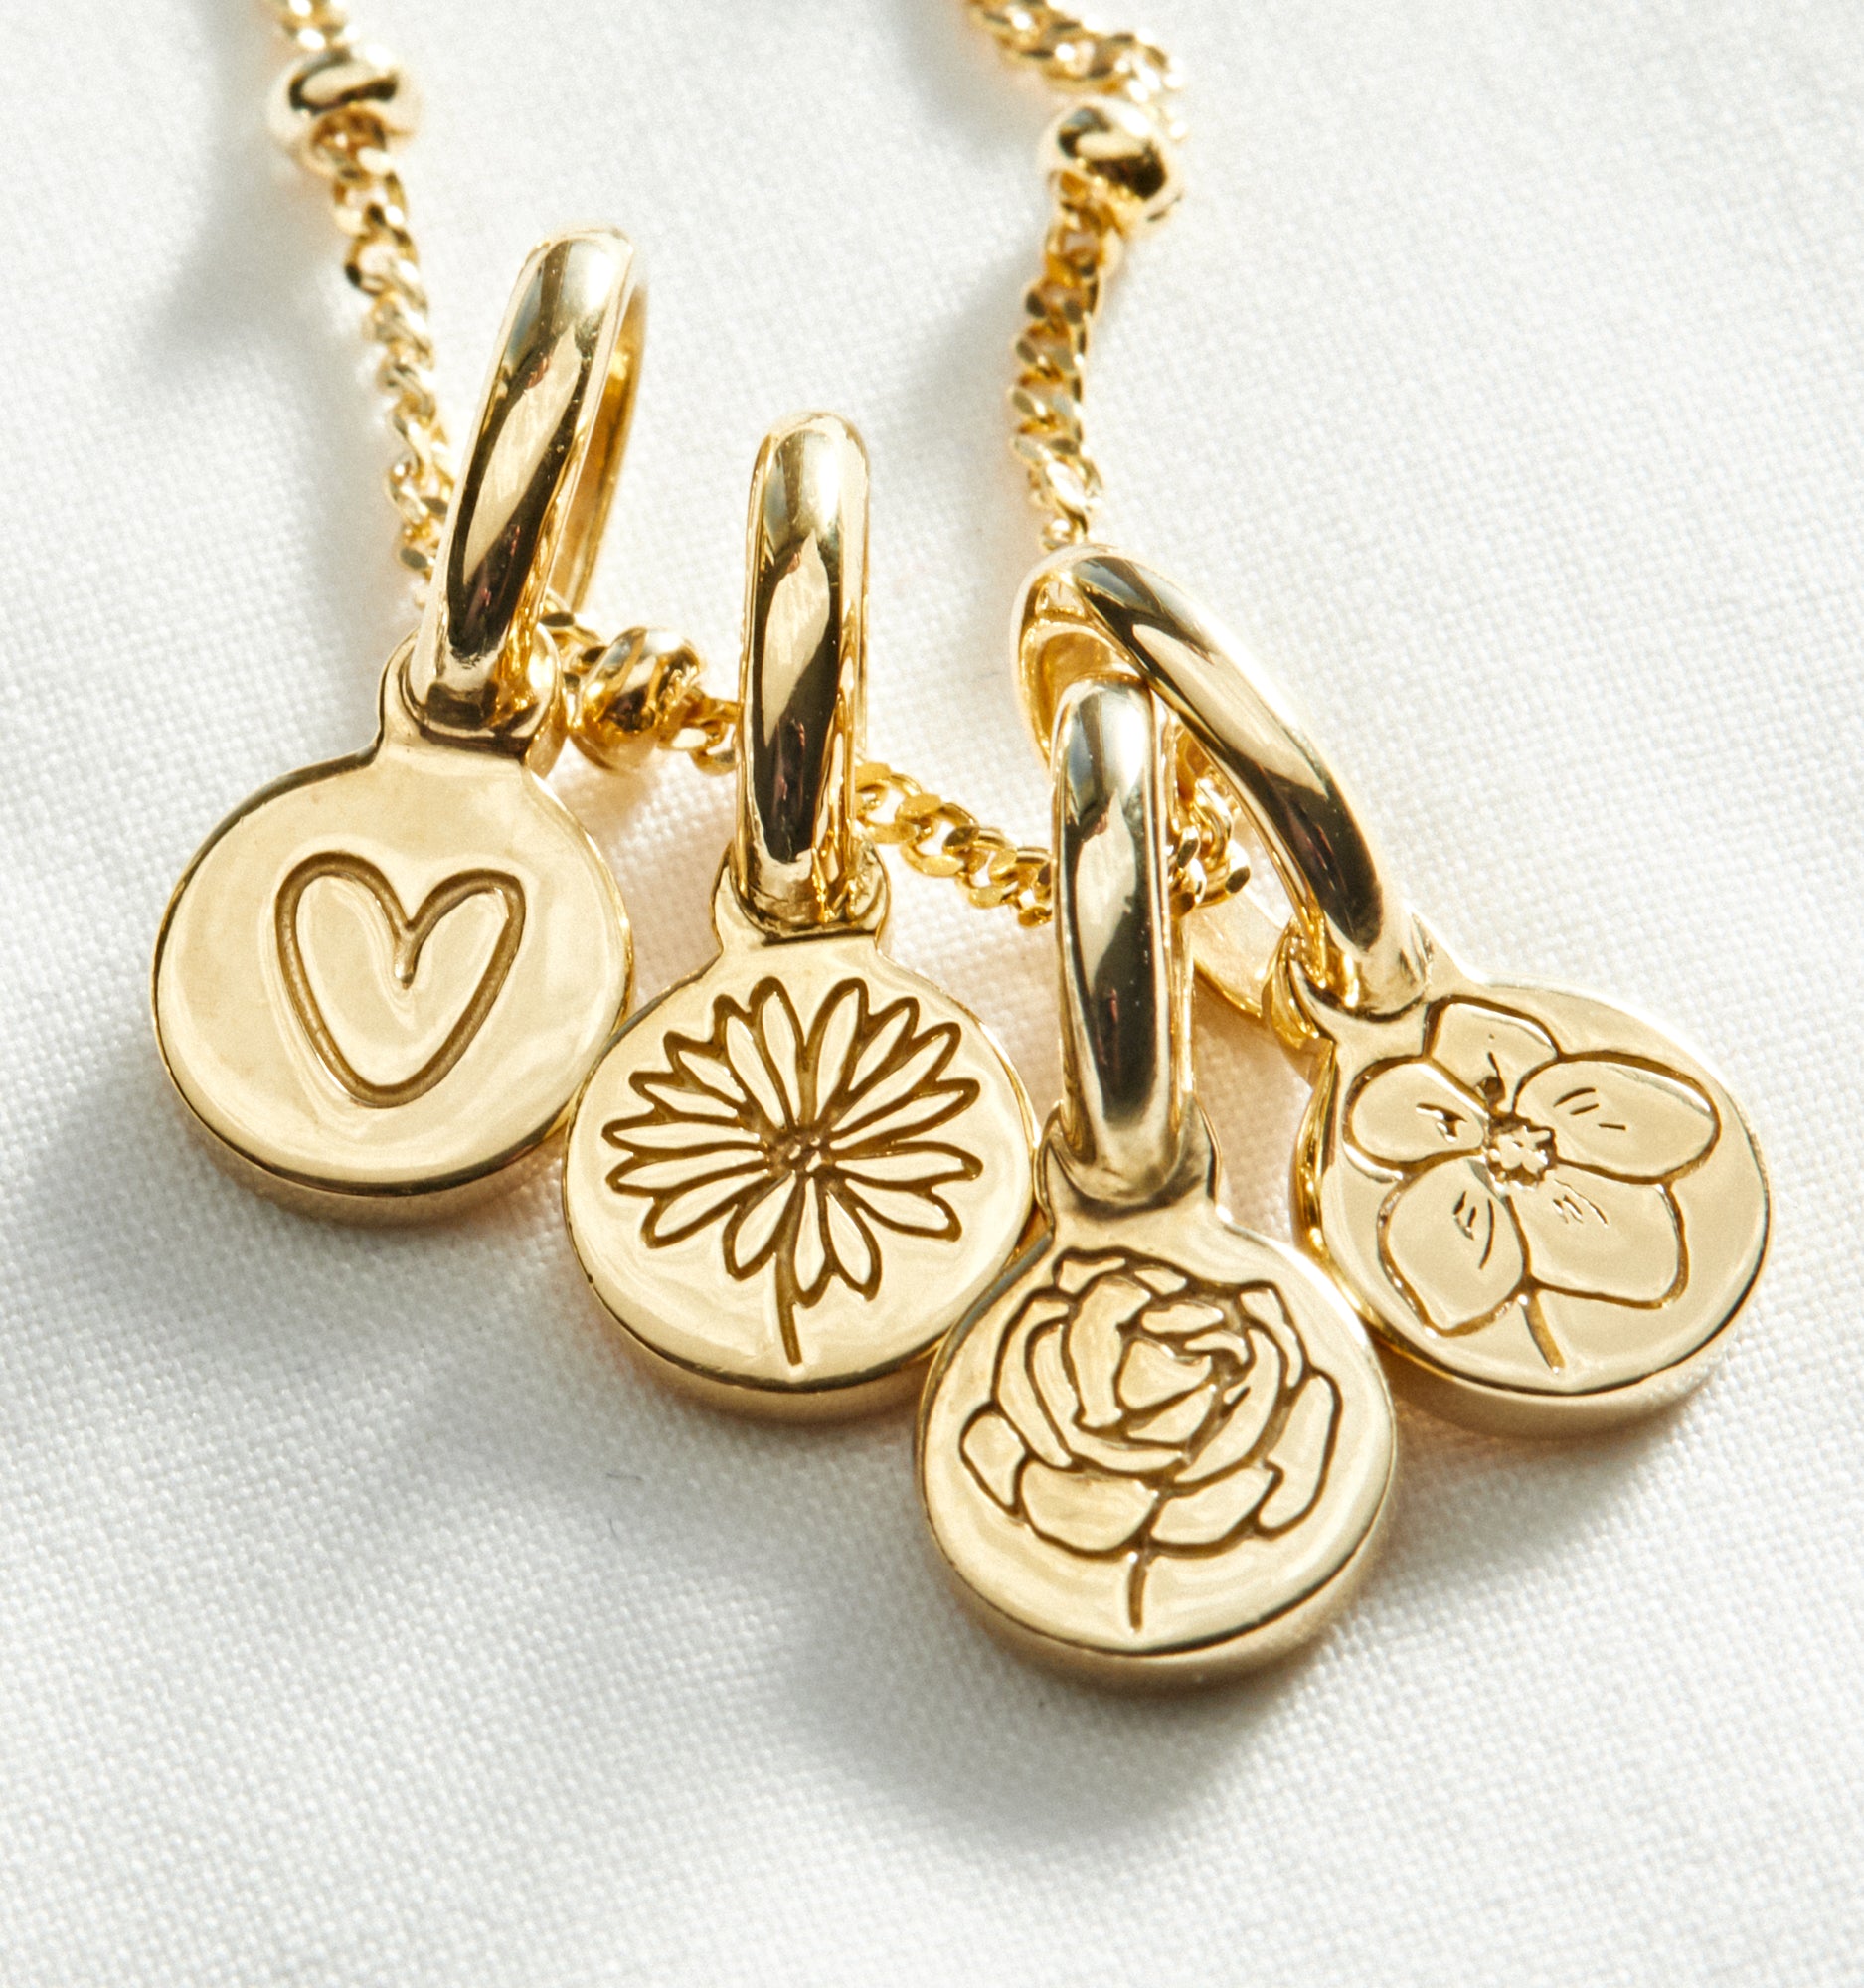 Marigold Flower Necklace - October